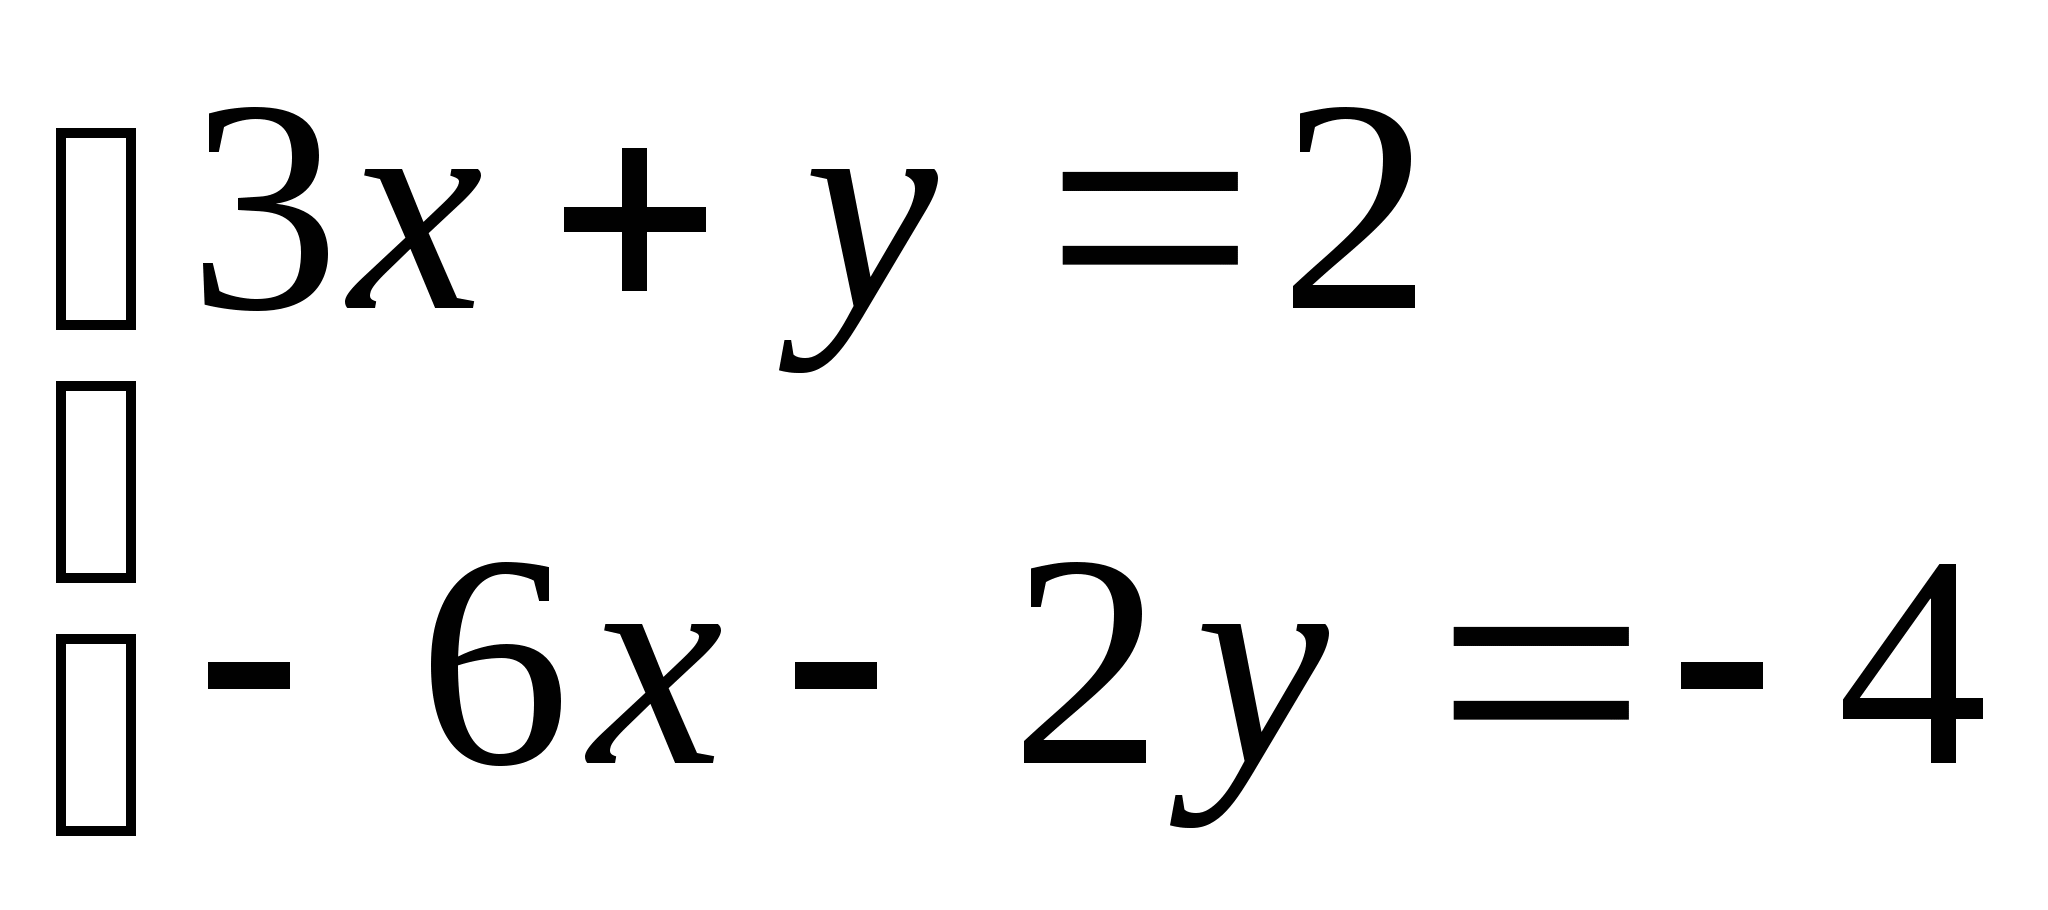 Конспект открытого урока по алгебре по теме: Графический способ решения систем линейных уравнений с двумя переменными 7 класс